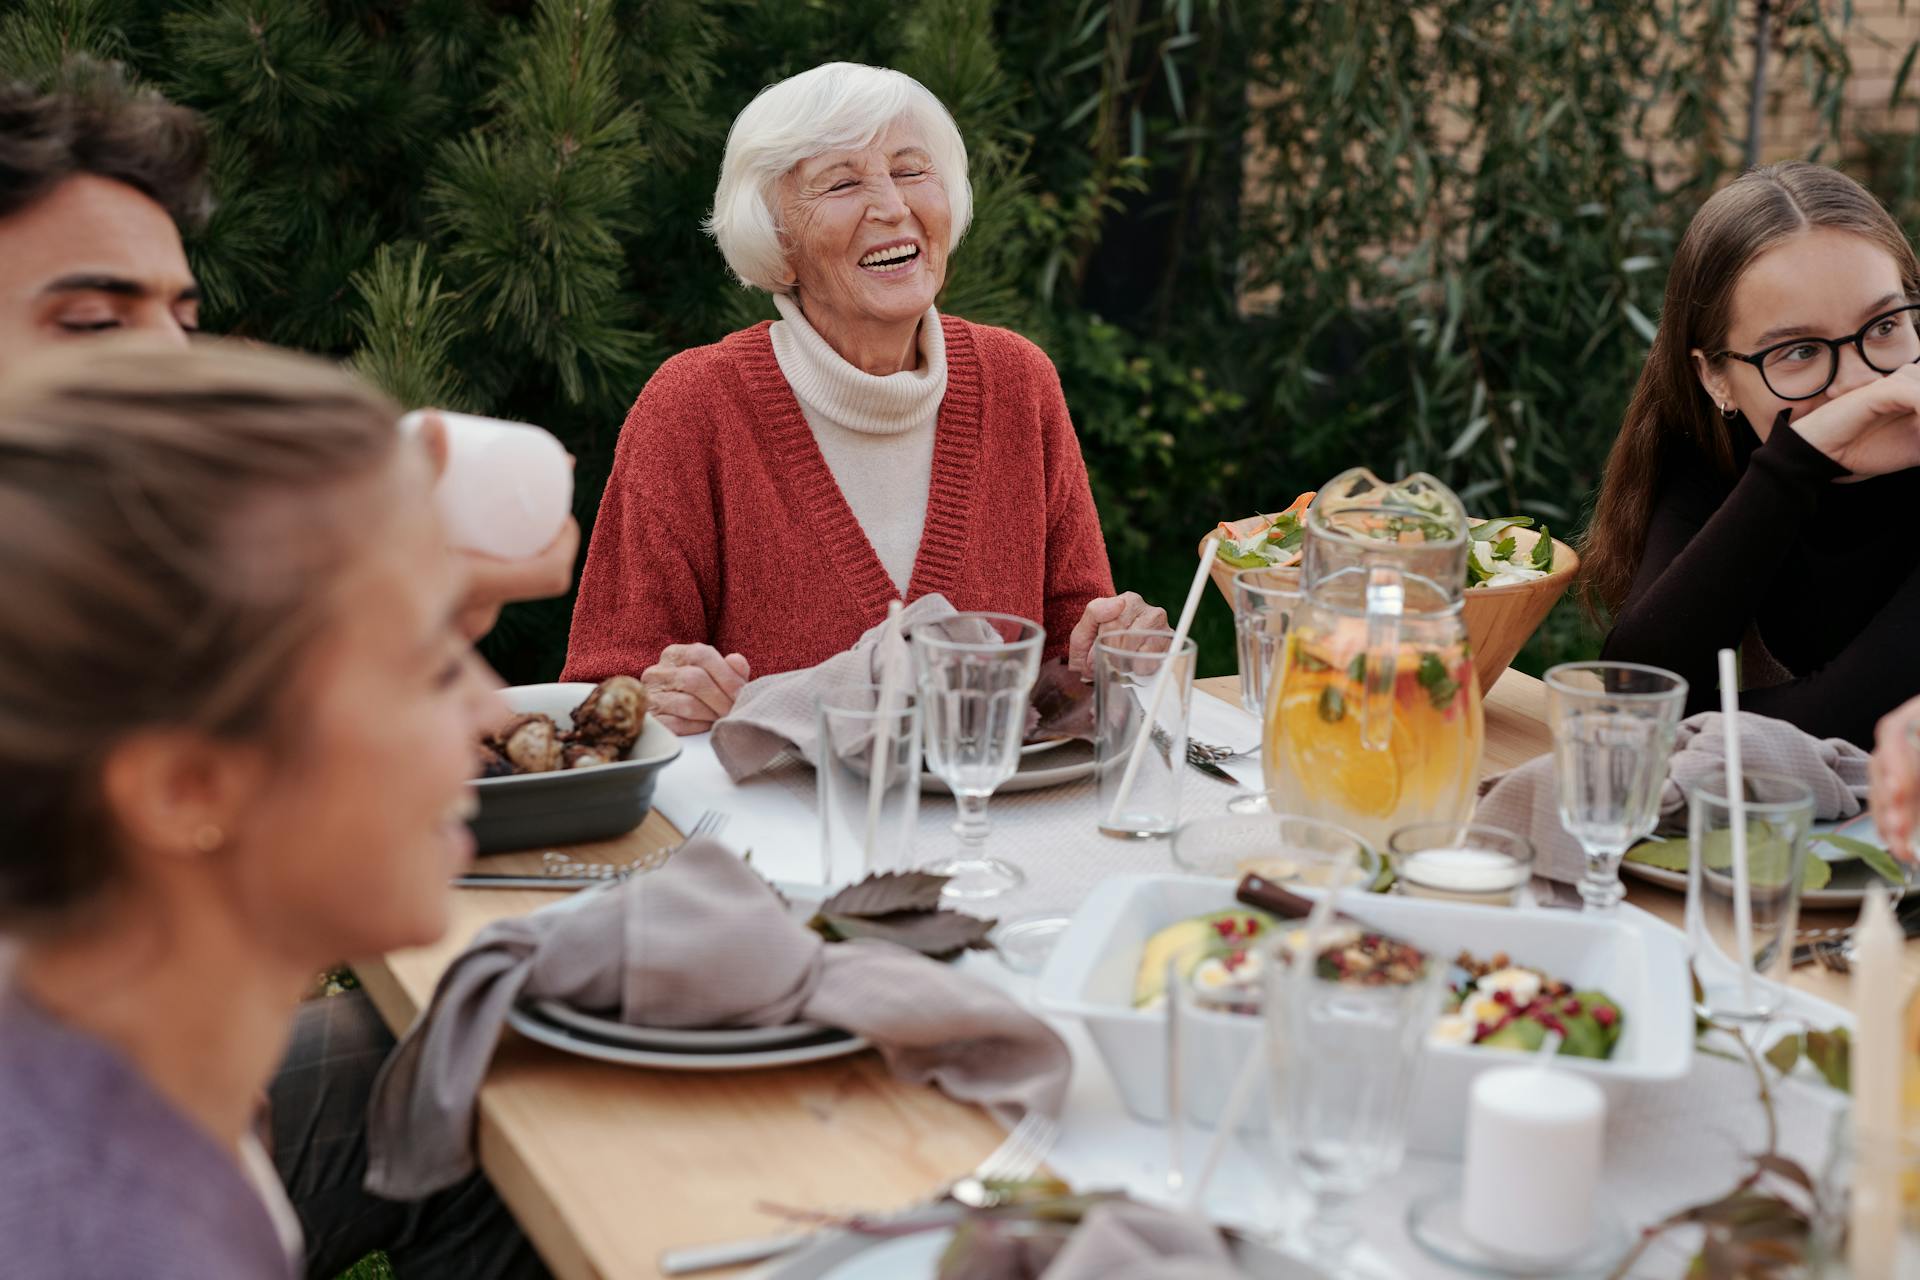 Una mujer mayor riendo durante una reunión familiar | Fuente: Pexels